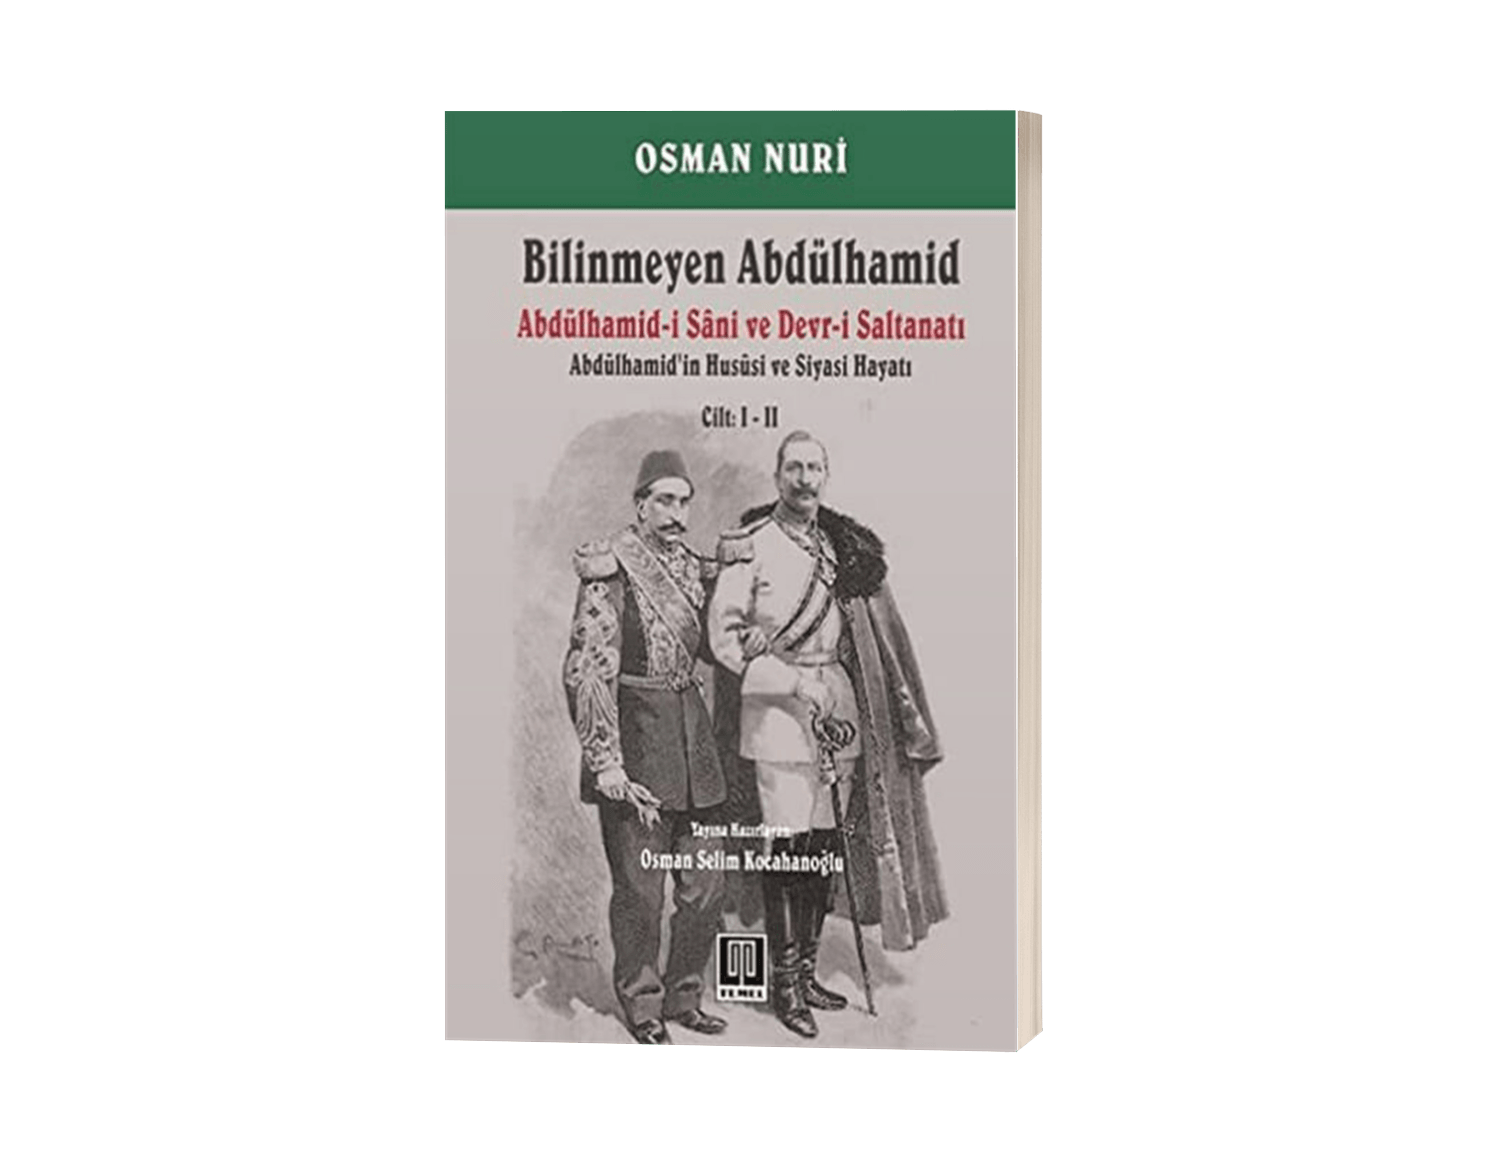 Bilinmeyen Abdülhamid (2 Cilt) Abdülhamid-i Sani ve Devr-i Saltanatı - Abdülhamid'in Hususi ve Siyasi Hayatı